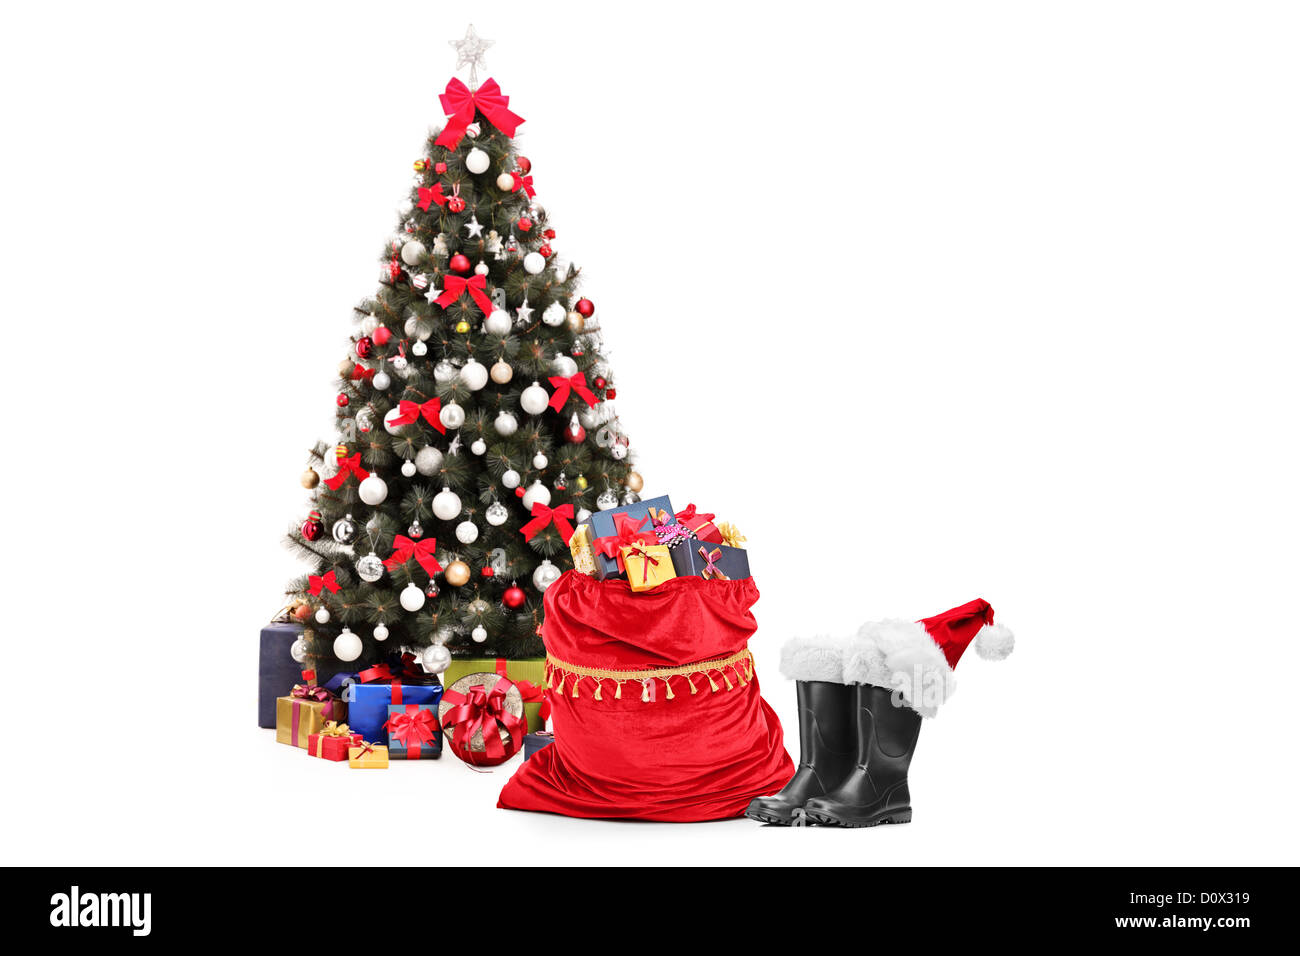 Arbre de noël santa amd accessoires, paire de bottes et sac plein de  cadeaux isolés contre fond blanc Photo Stock - Alamy